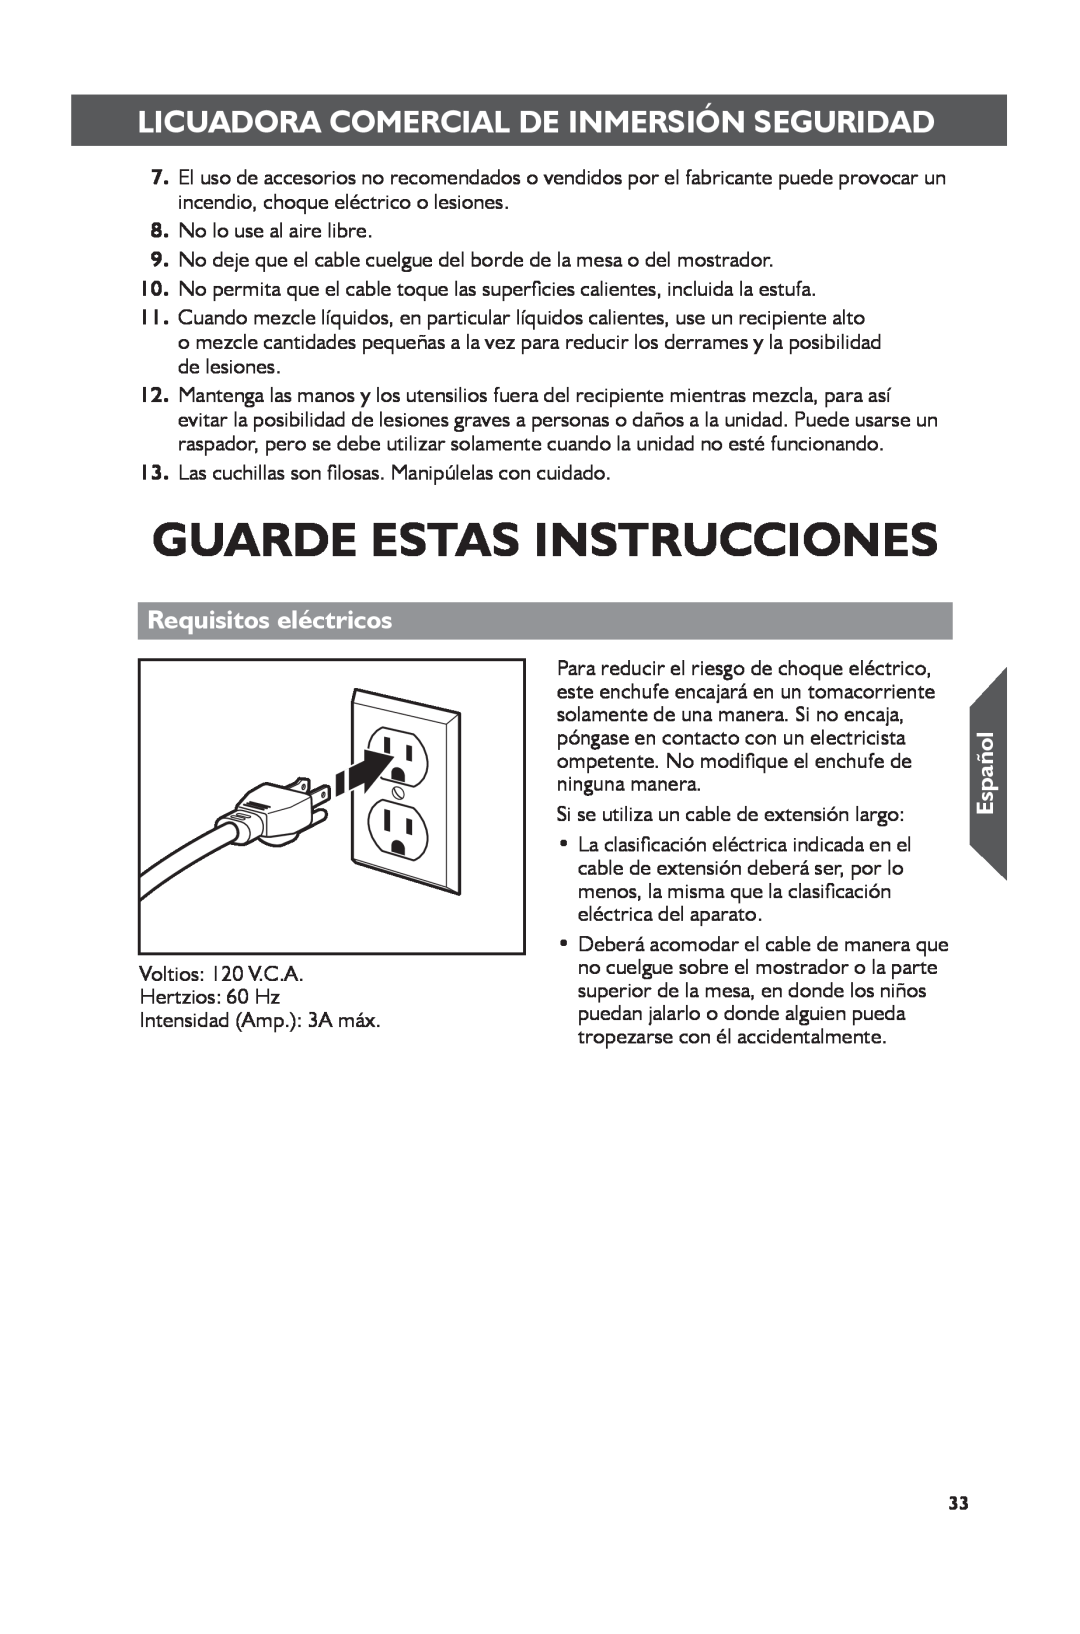 KitchenAid KHBC212 Guarde Estas Instrucciones, Requisitos eléctricos, Licuadora Comercial De Inmersión Seguridad, Español 